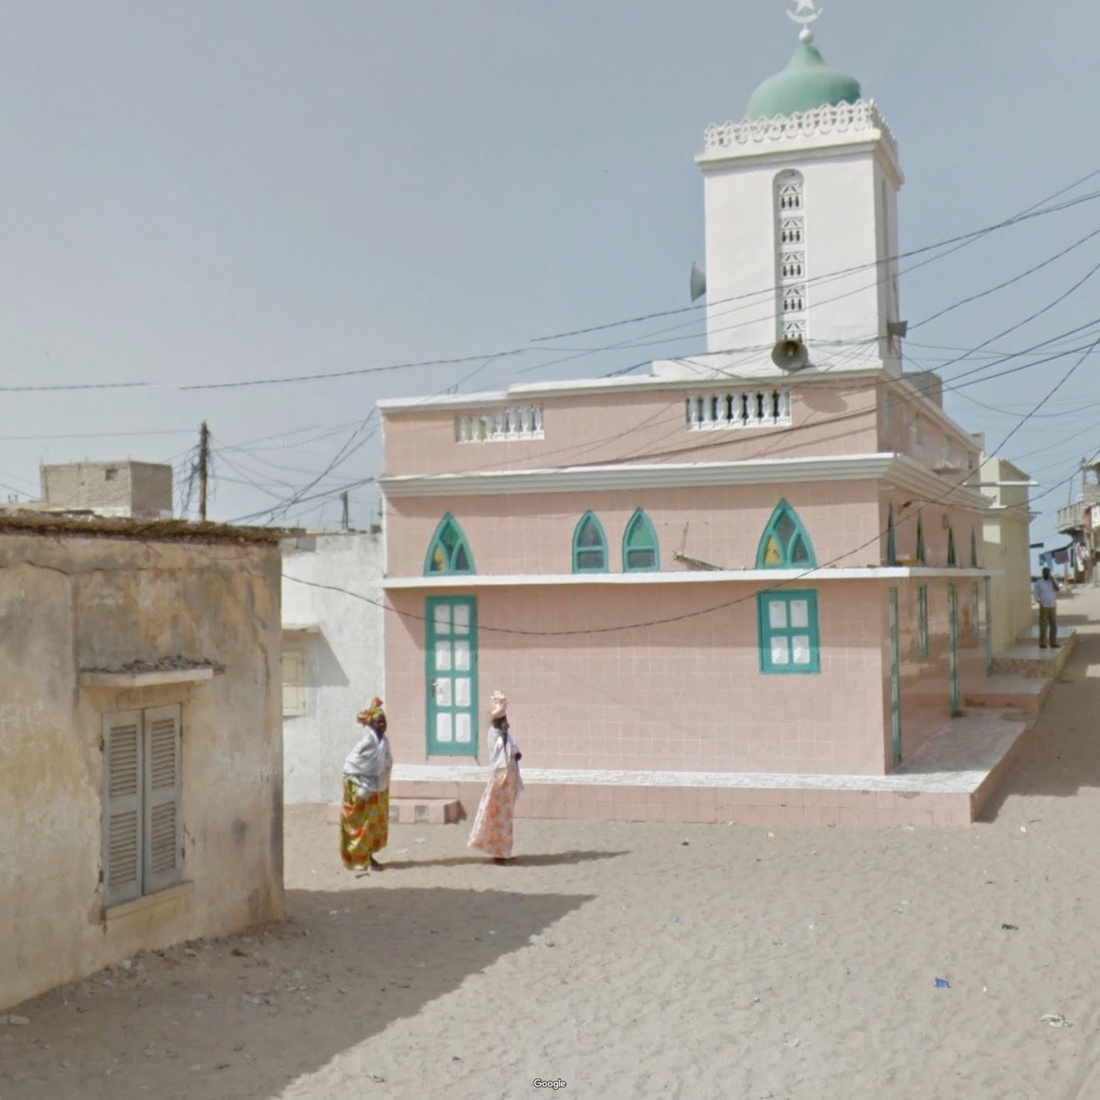 Fotografias capturadas através do Google Street View